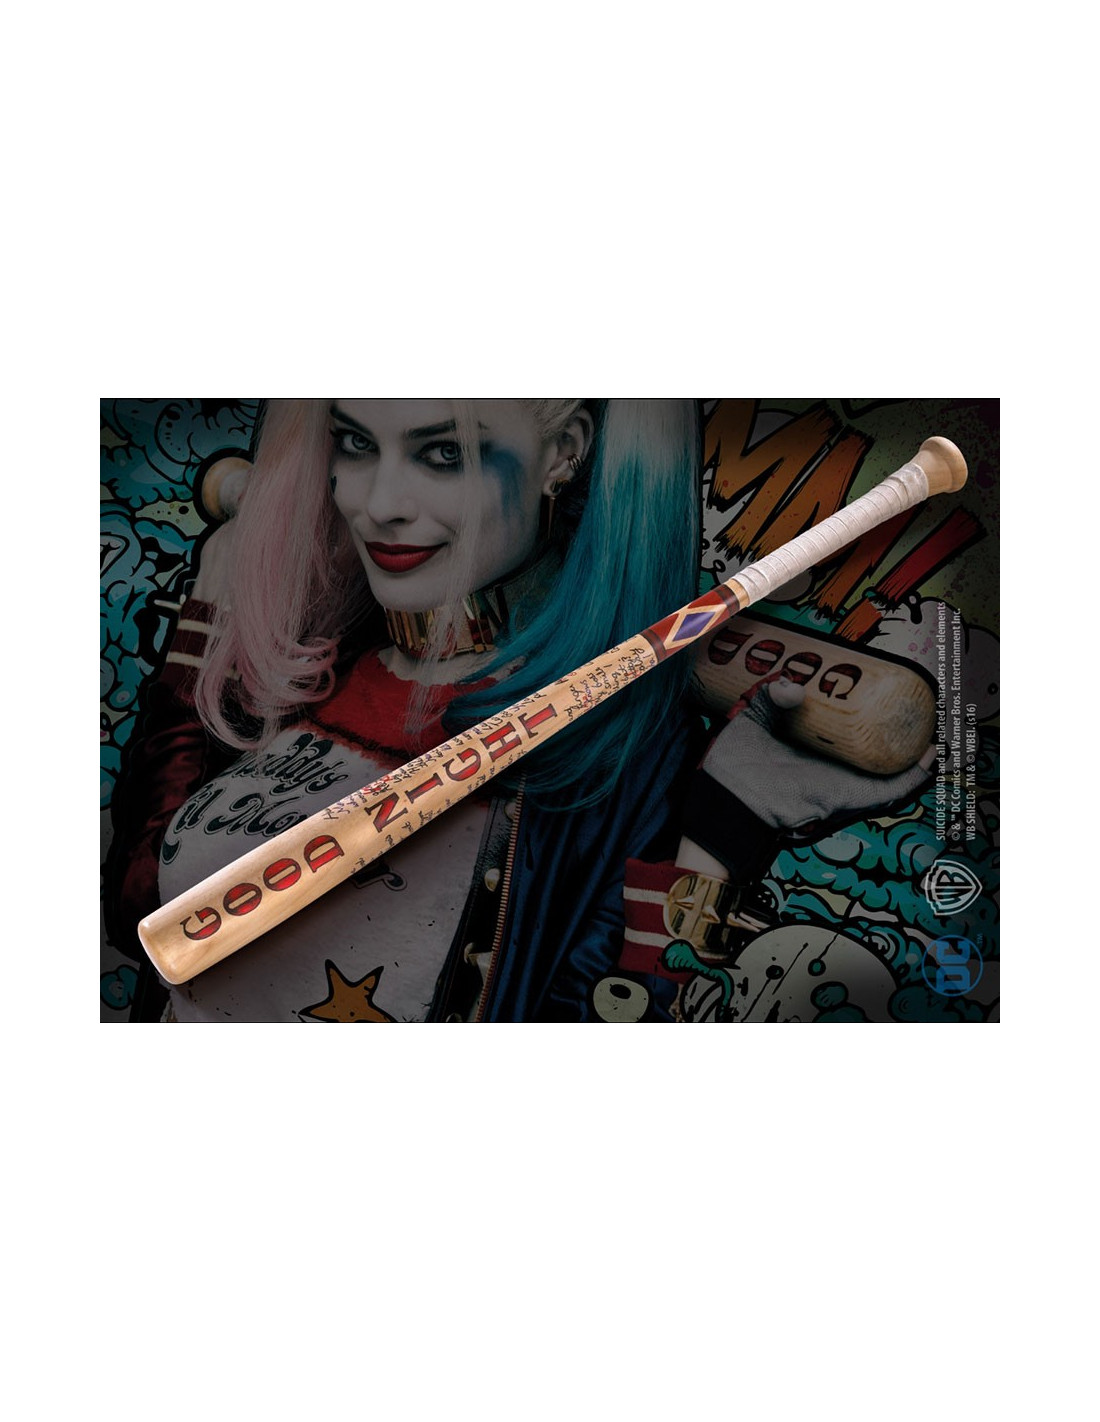 Mazza da baseball Harley Quinn, Suicide Squad, DC Comics ⚔️ Negozio  Medievale